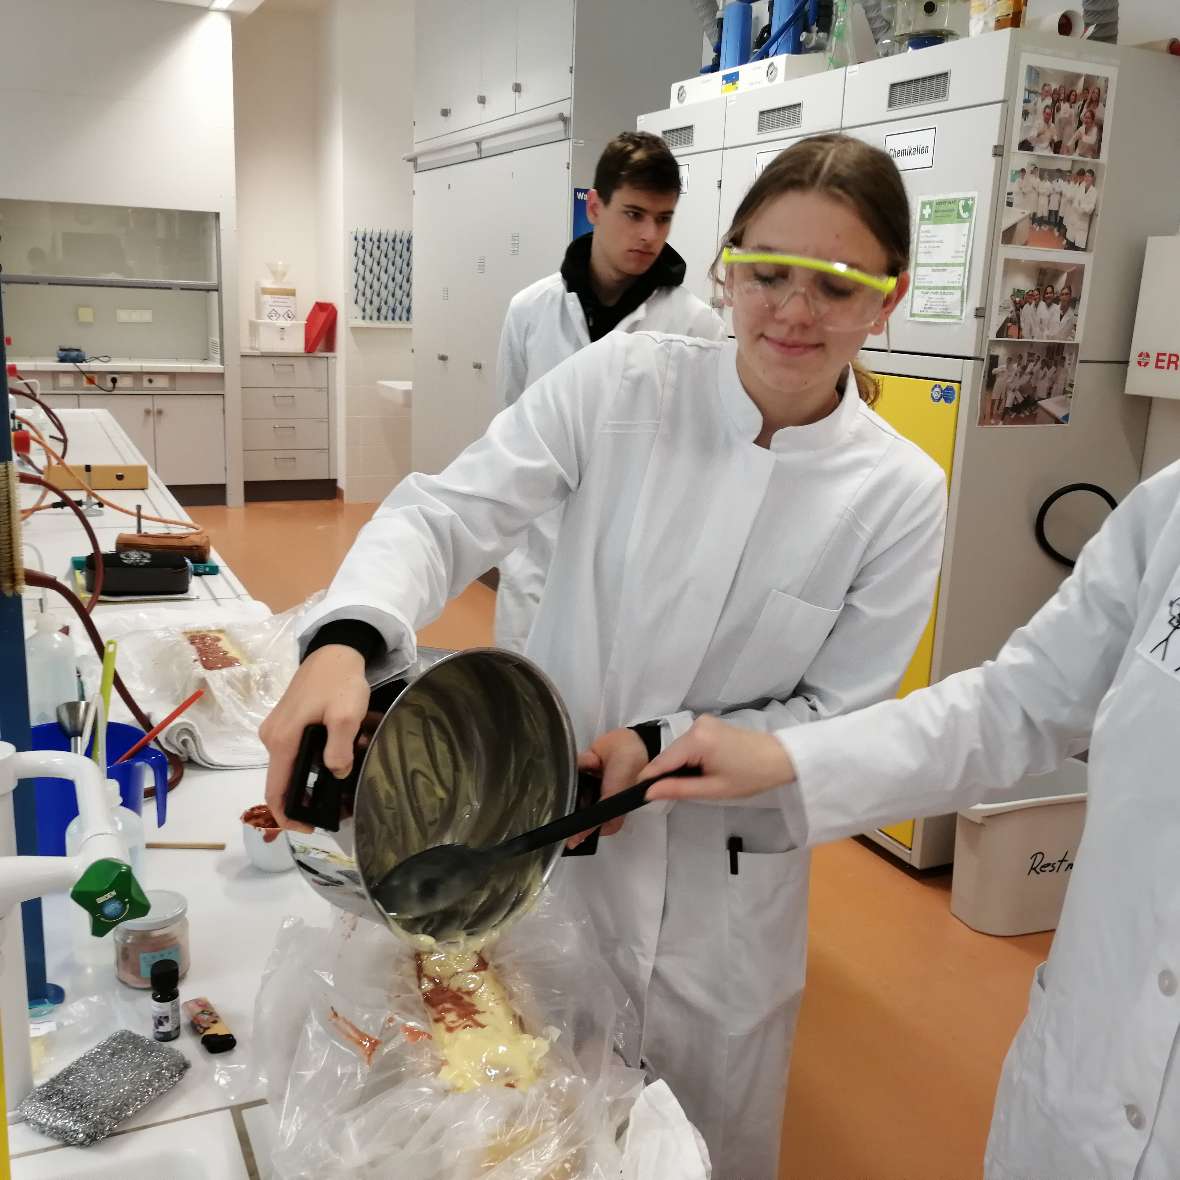 Eine Schülerin und ein Schülerbei der Seifenherstellung im Labor